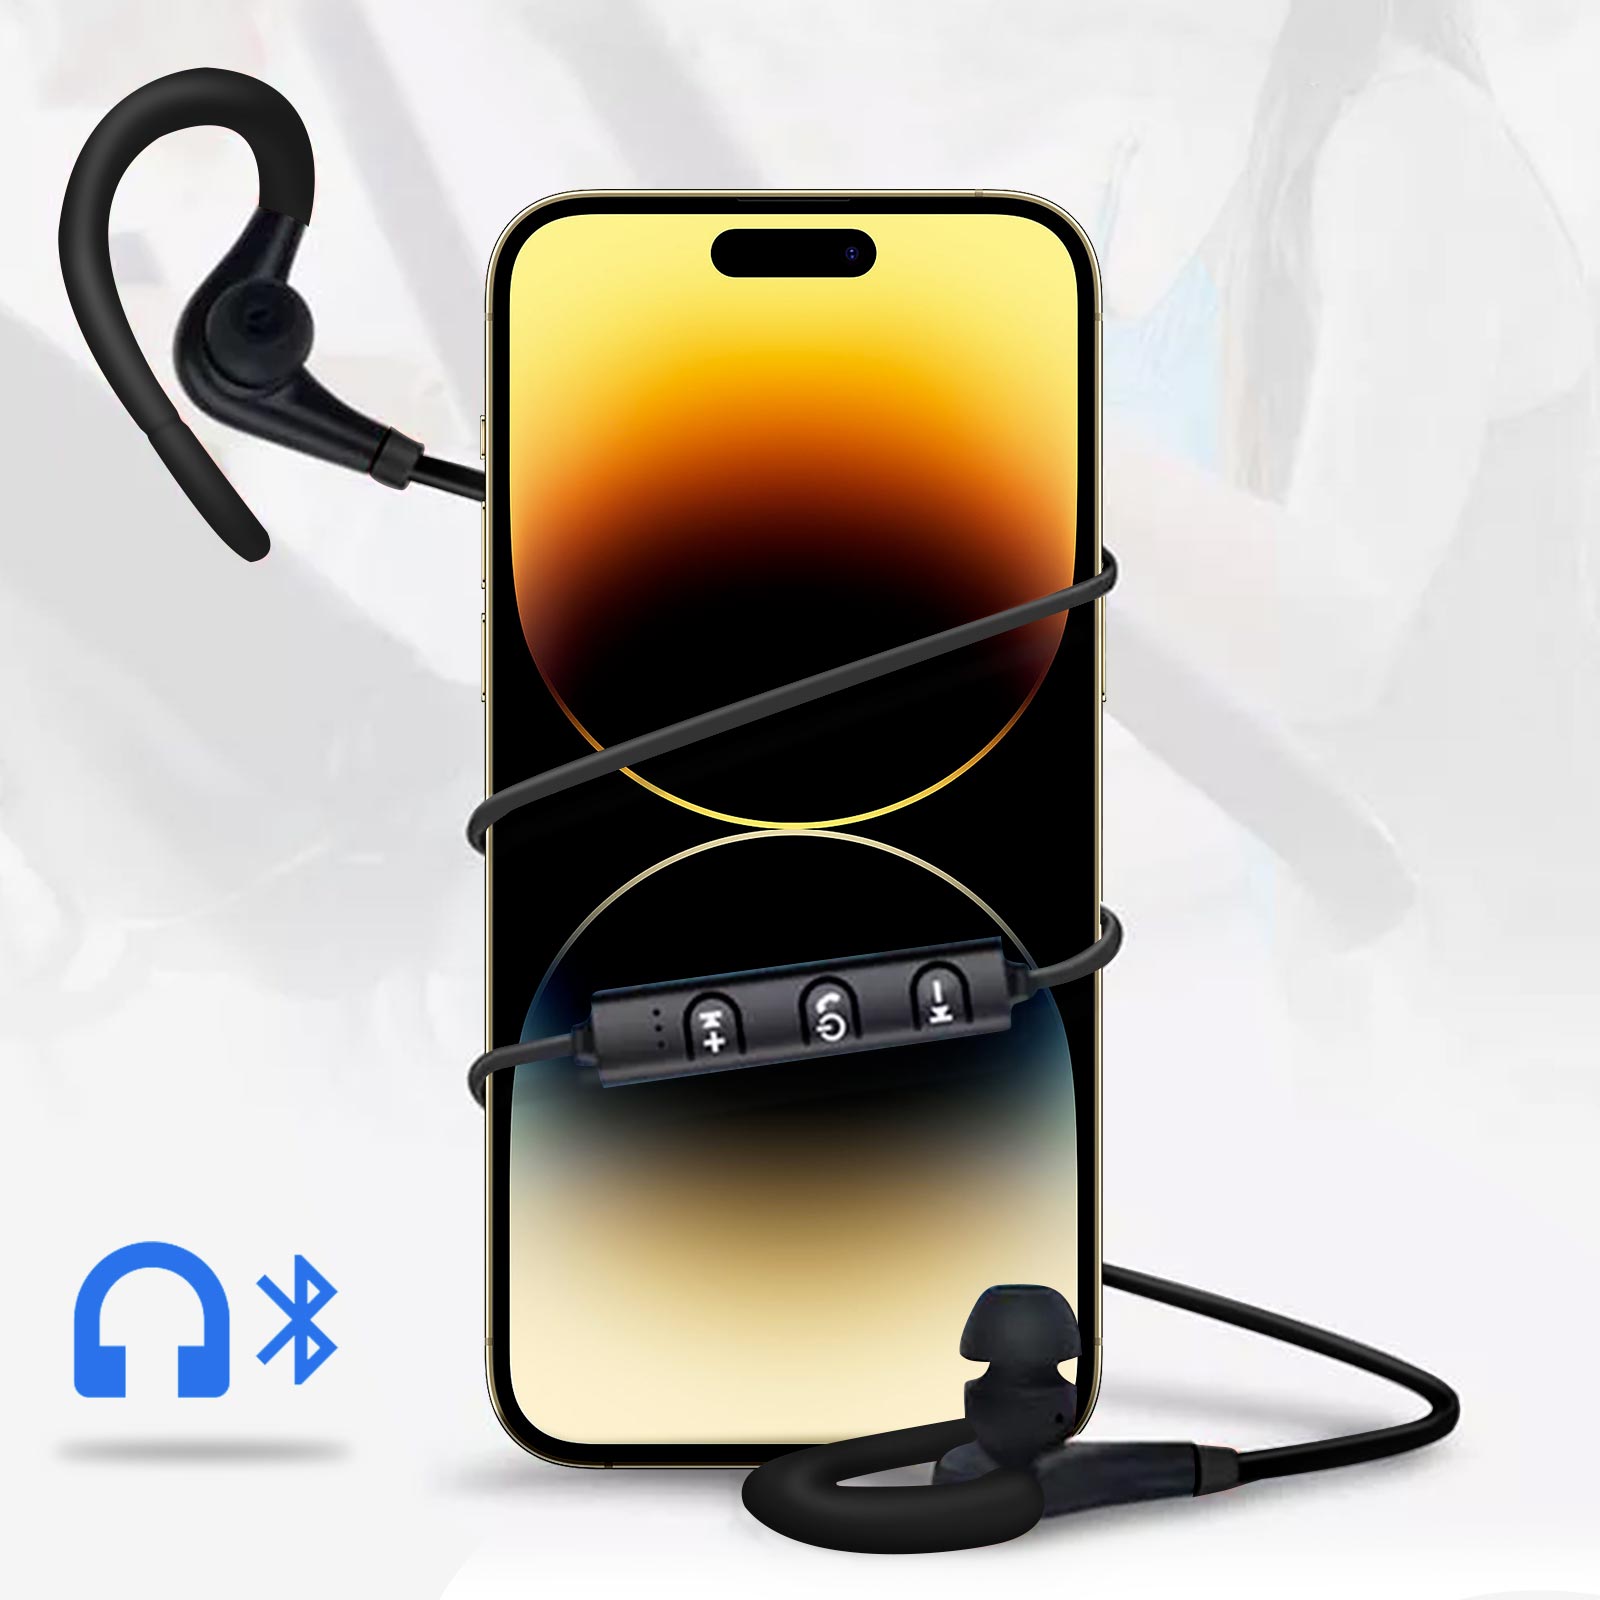 Écouteurs sport Bluetooth stéréo - Contours d'oreilles silicone ultra  confort + Pochette de rangement - Noir